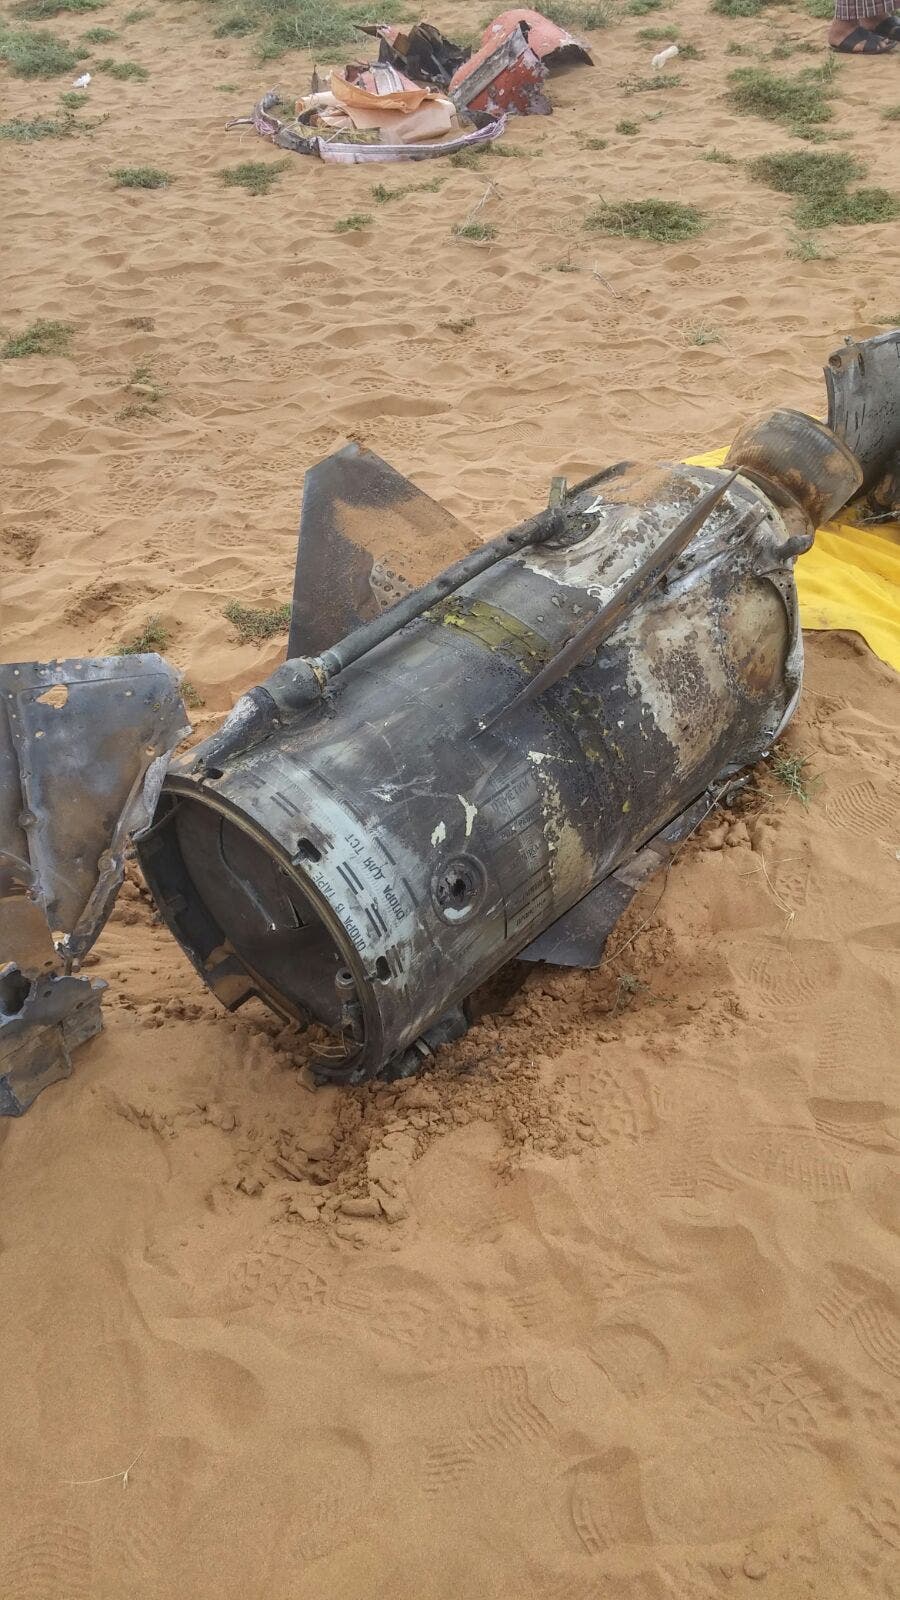 العربية الحدث: الحوثي فشل بإطلاق صاروخ باليستي